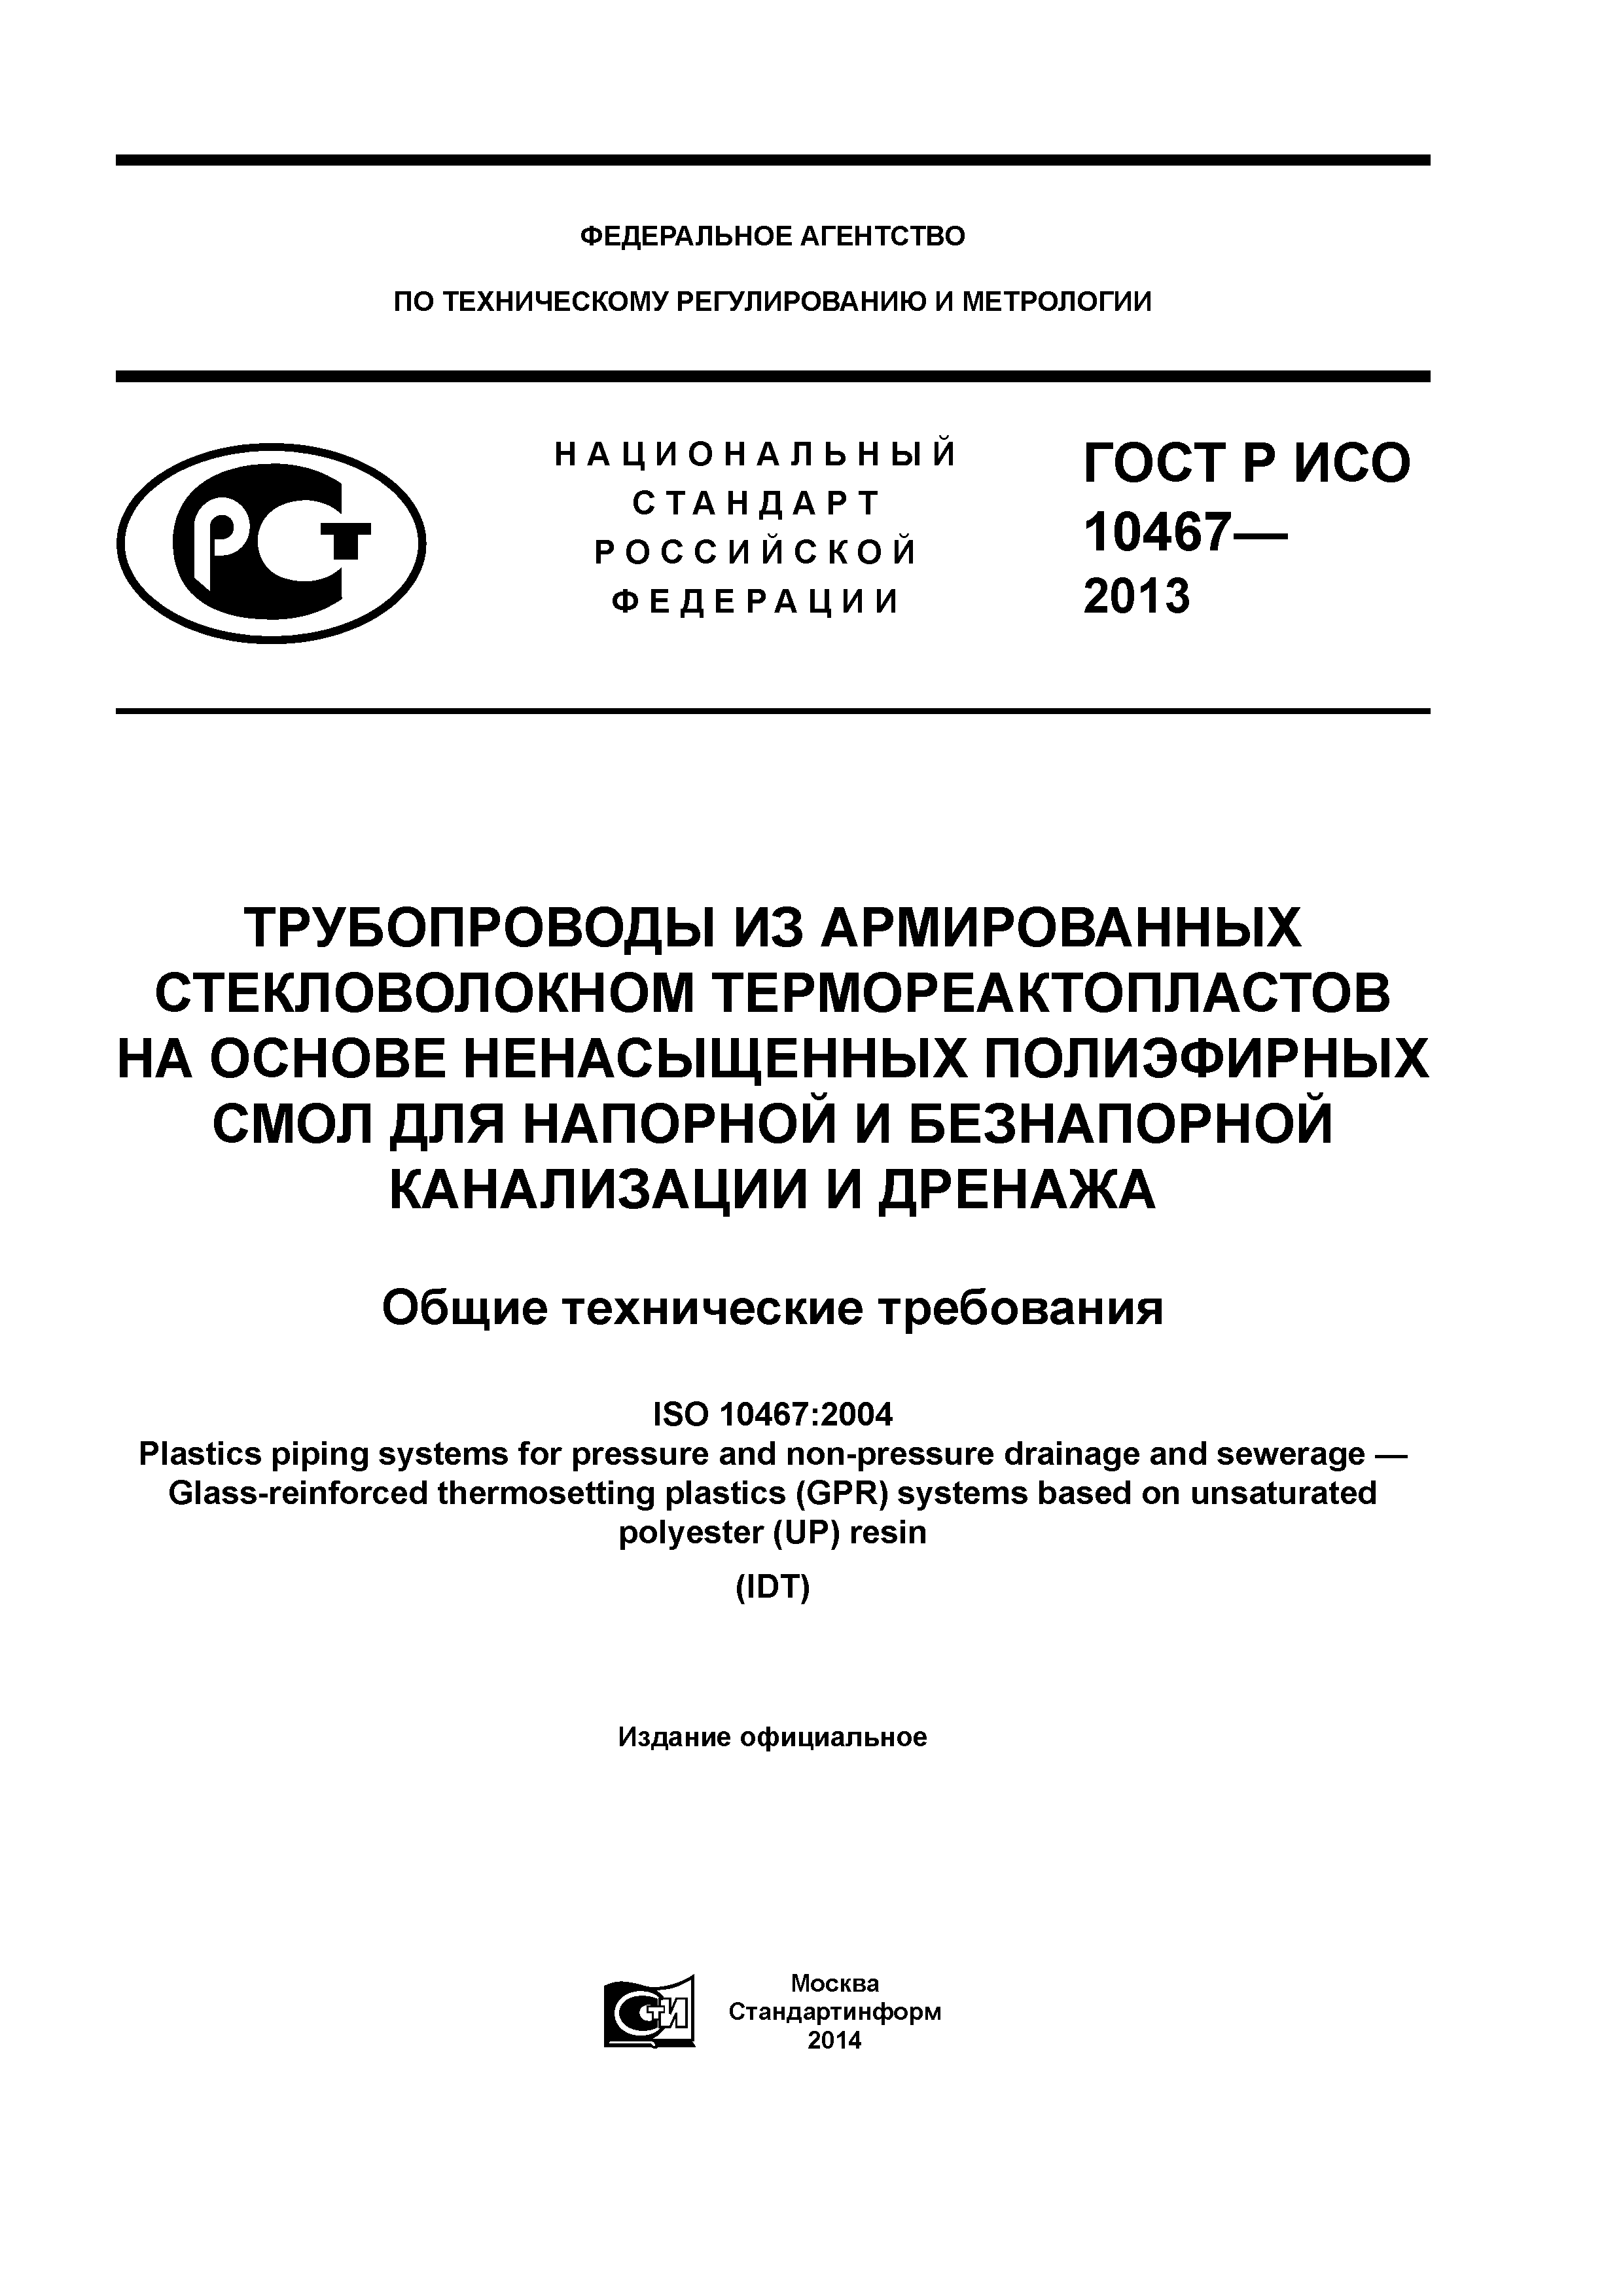 ГОСТ Р ИСО 10467-2013